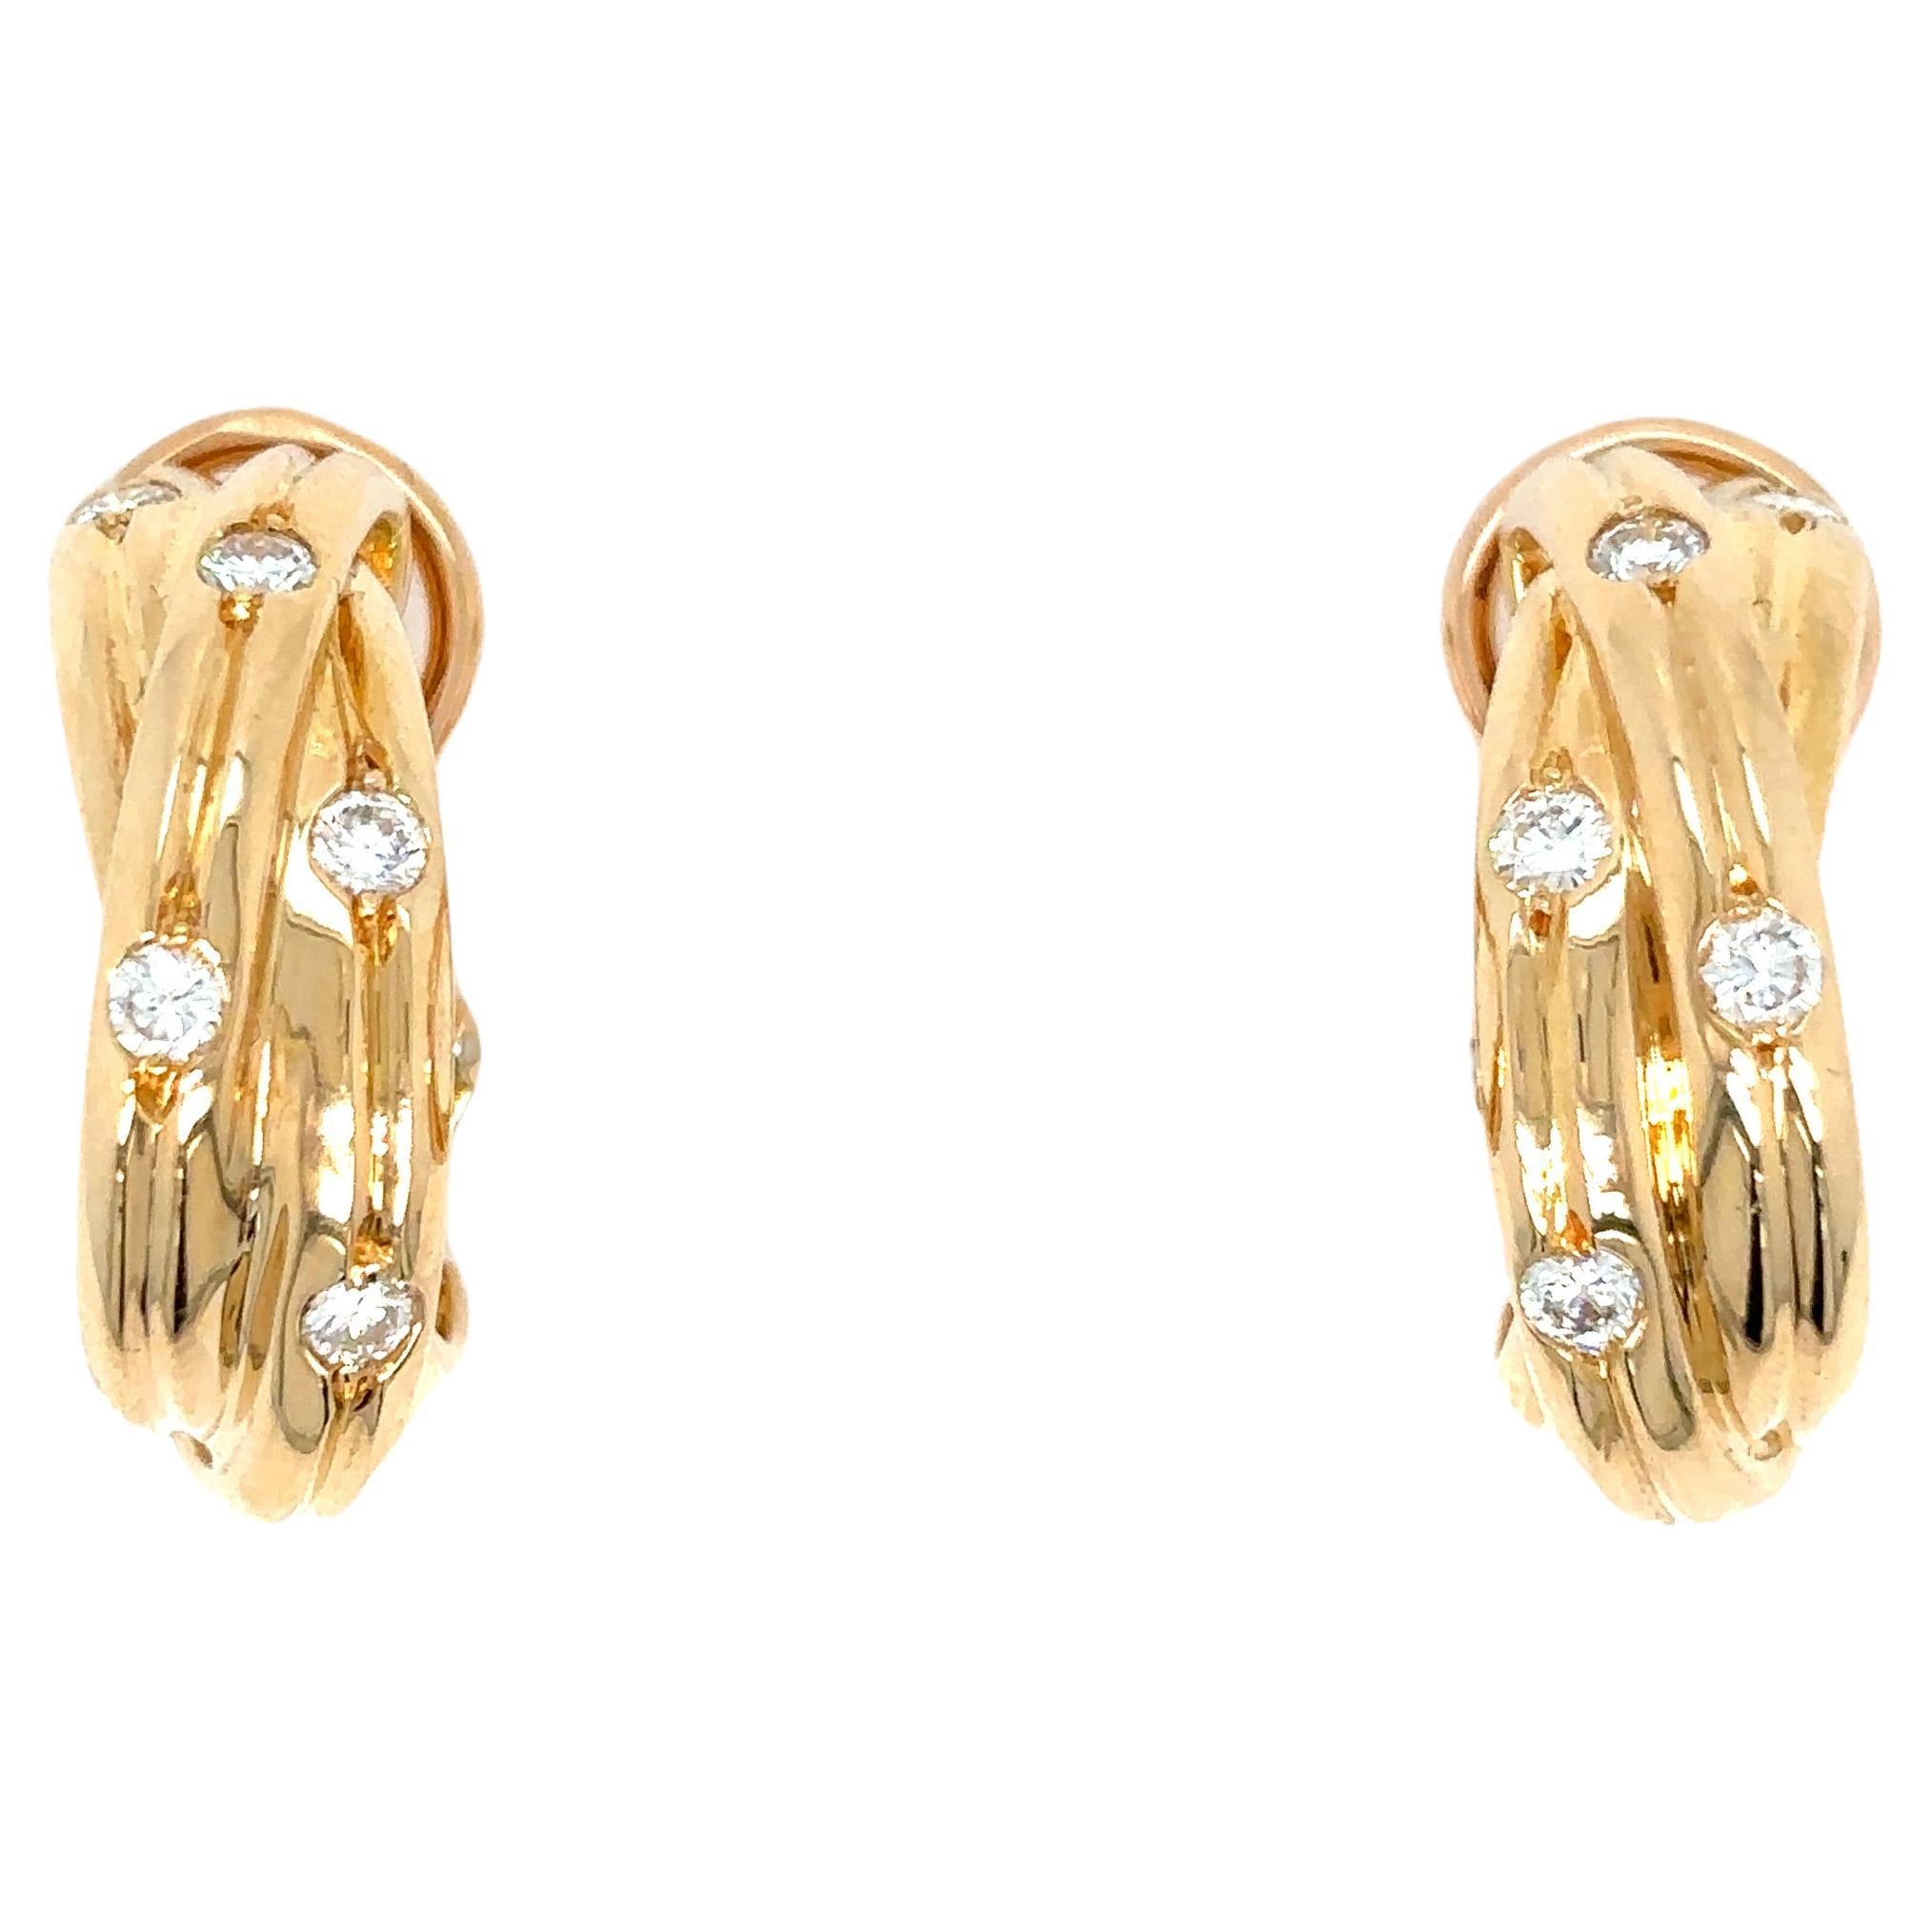 Roseberys London | Cartier, two pairs of diamond set earrings, by Cartier,